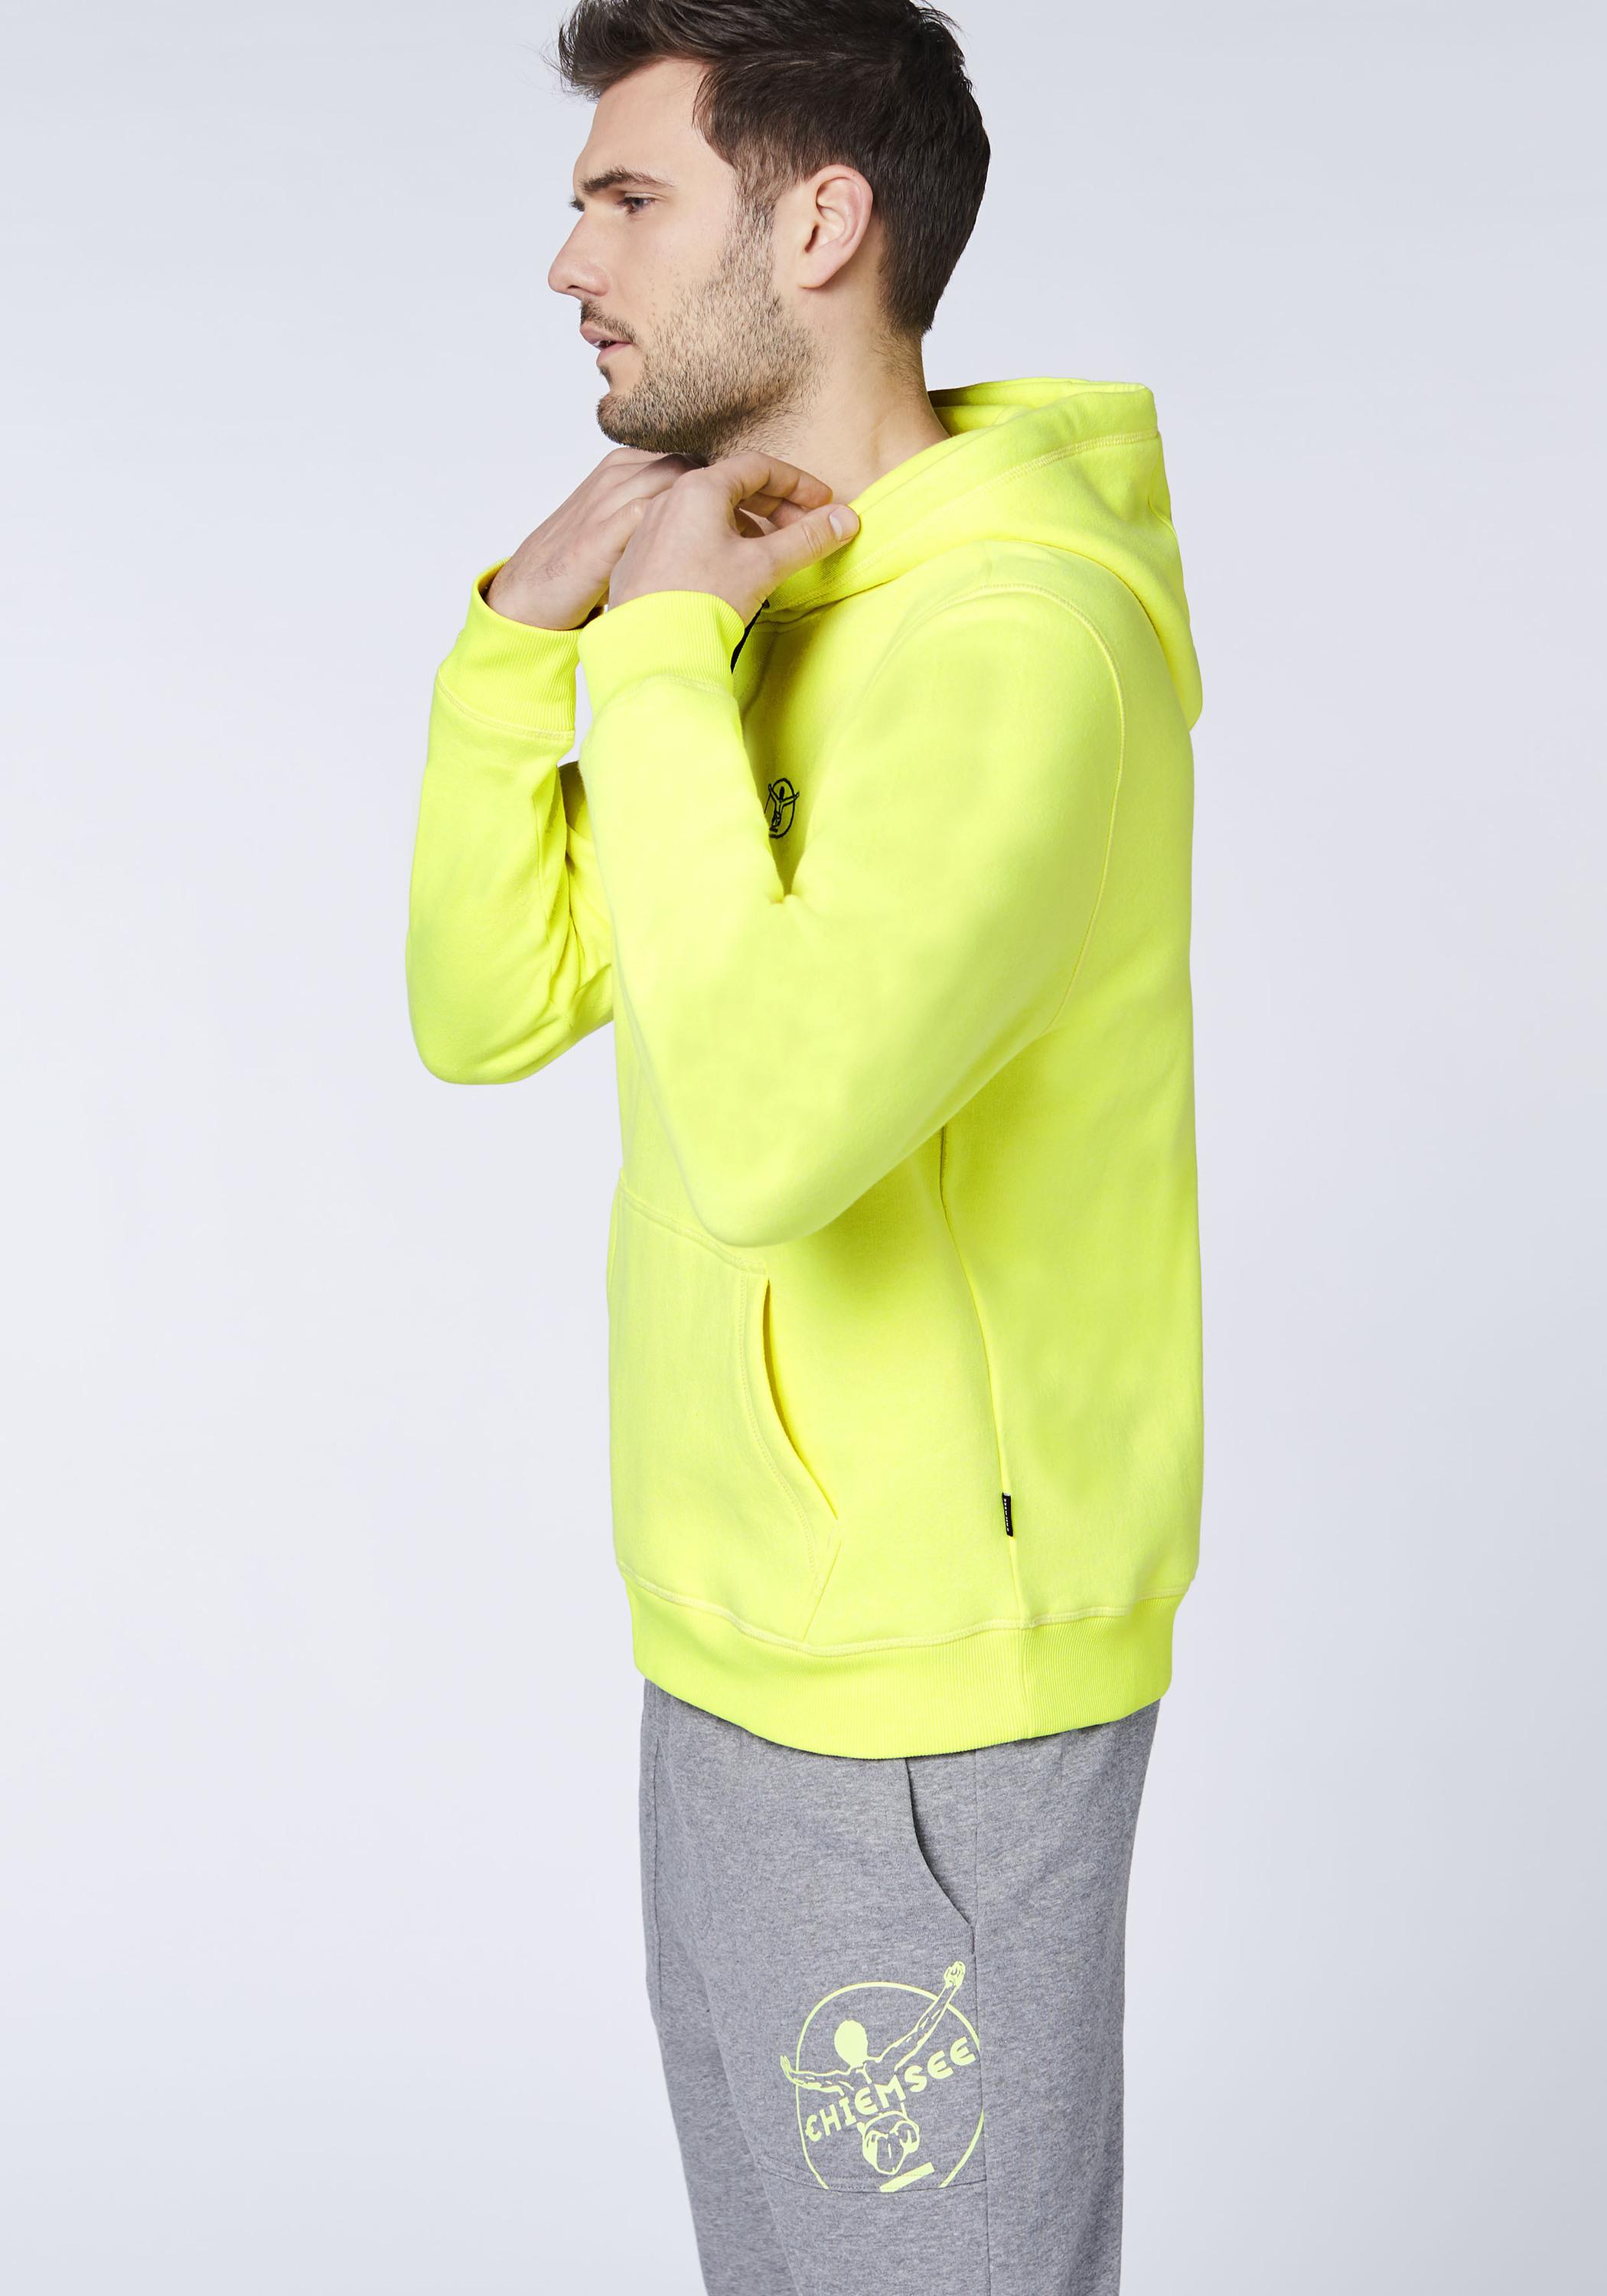 Chiemsee Kapuzensweatshirt Sweatshirt Herren Safety von SportScheck im kaufen Yellow Online Shop